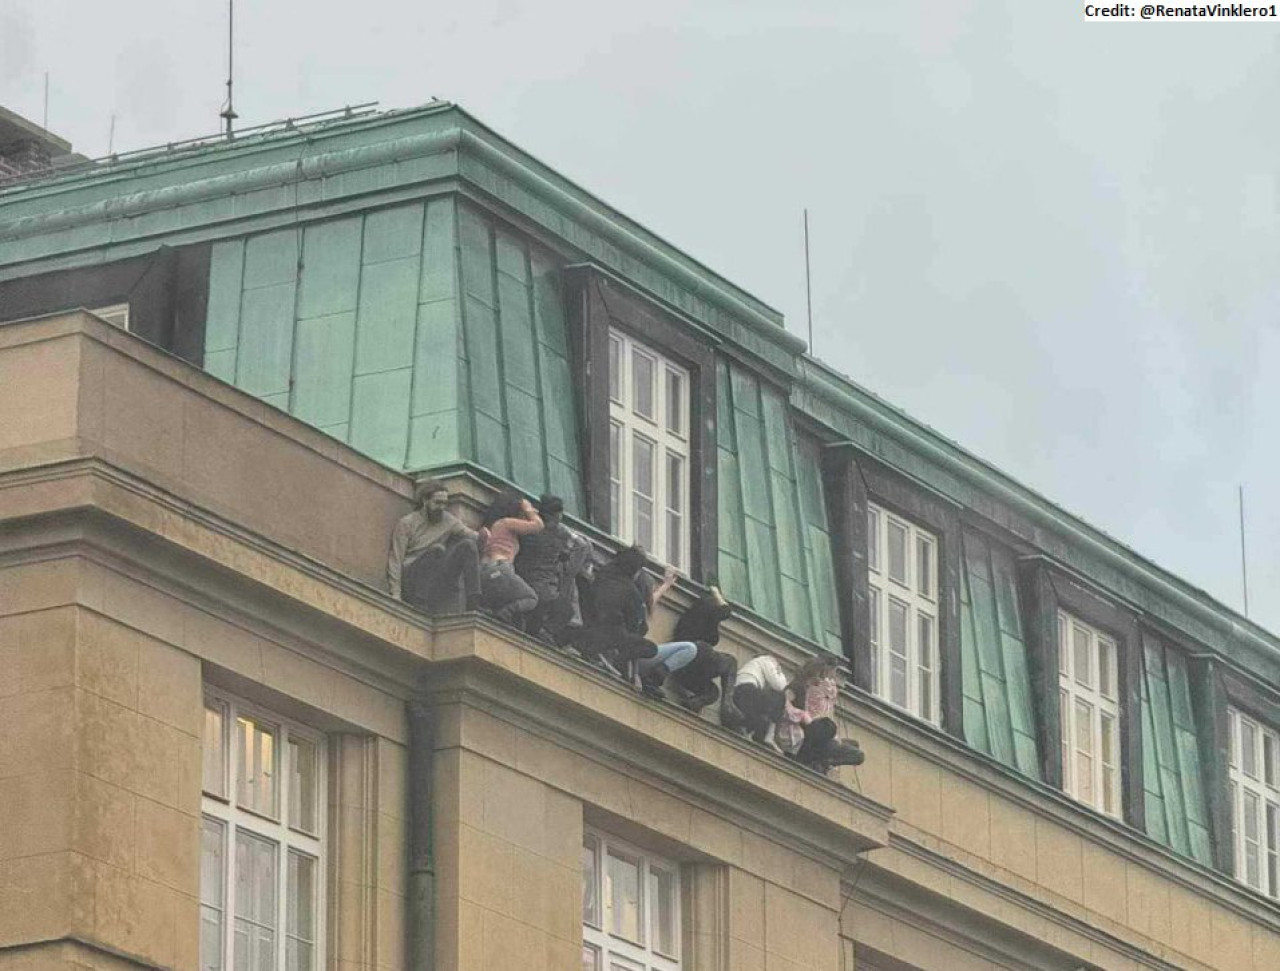 Alumnos de la Universidad de Praga escondidos del tirador. Foto: Twitter.